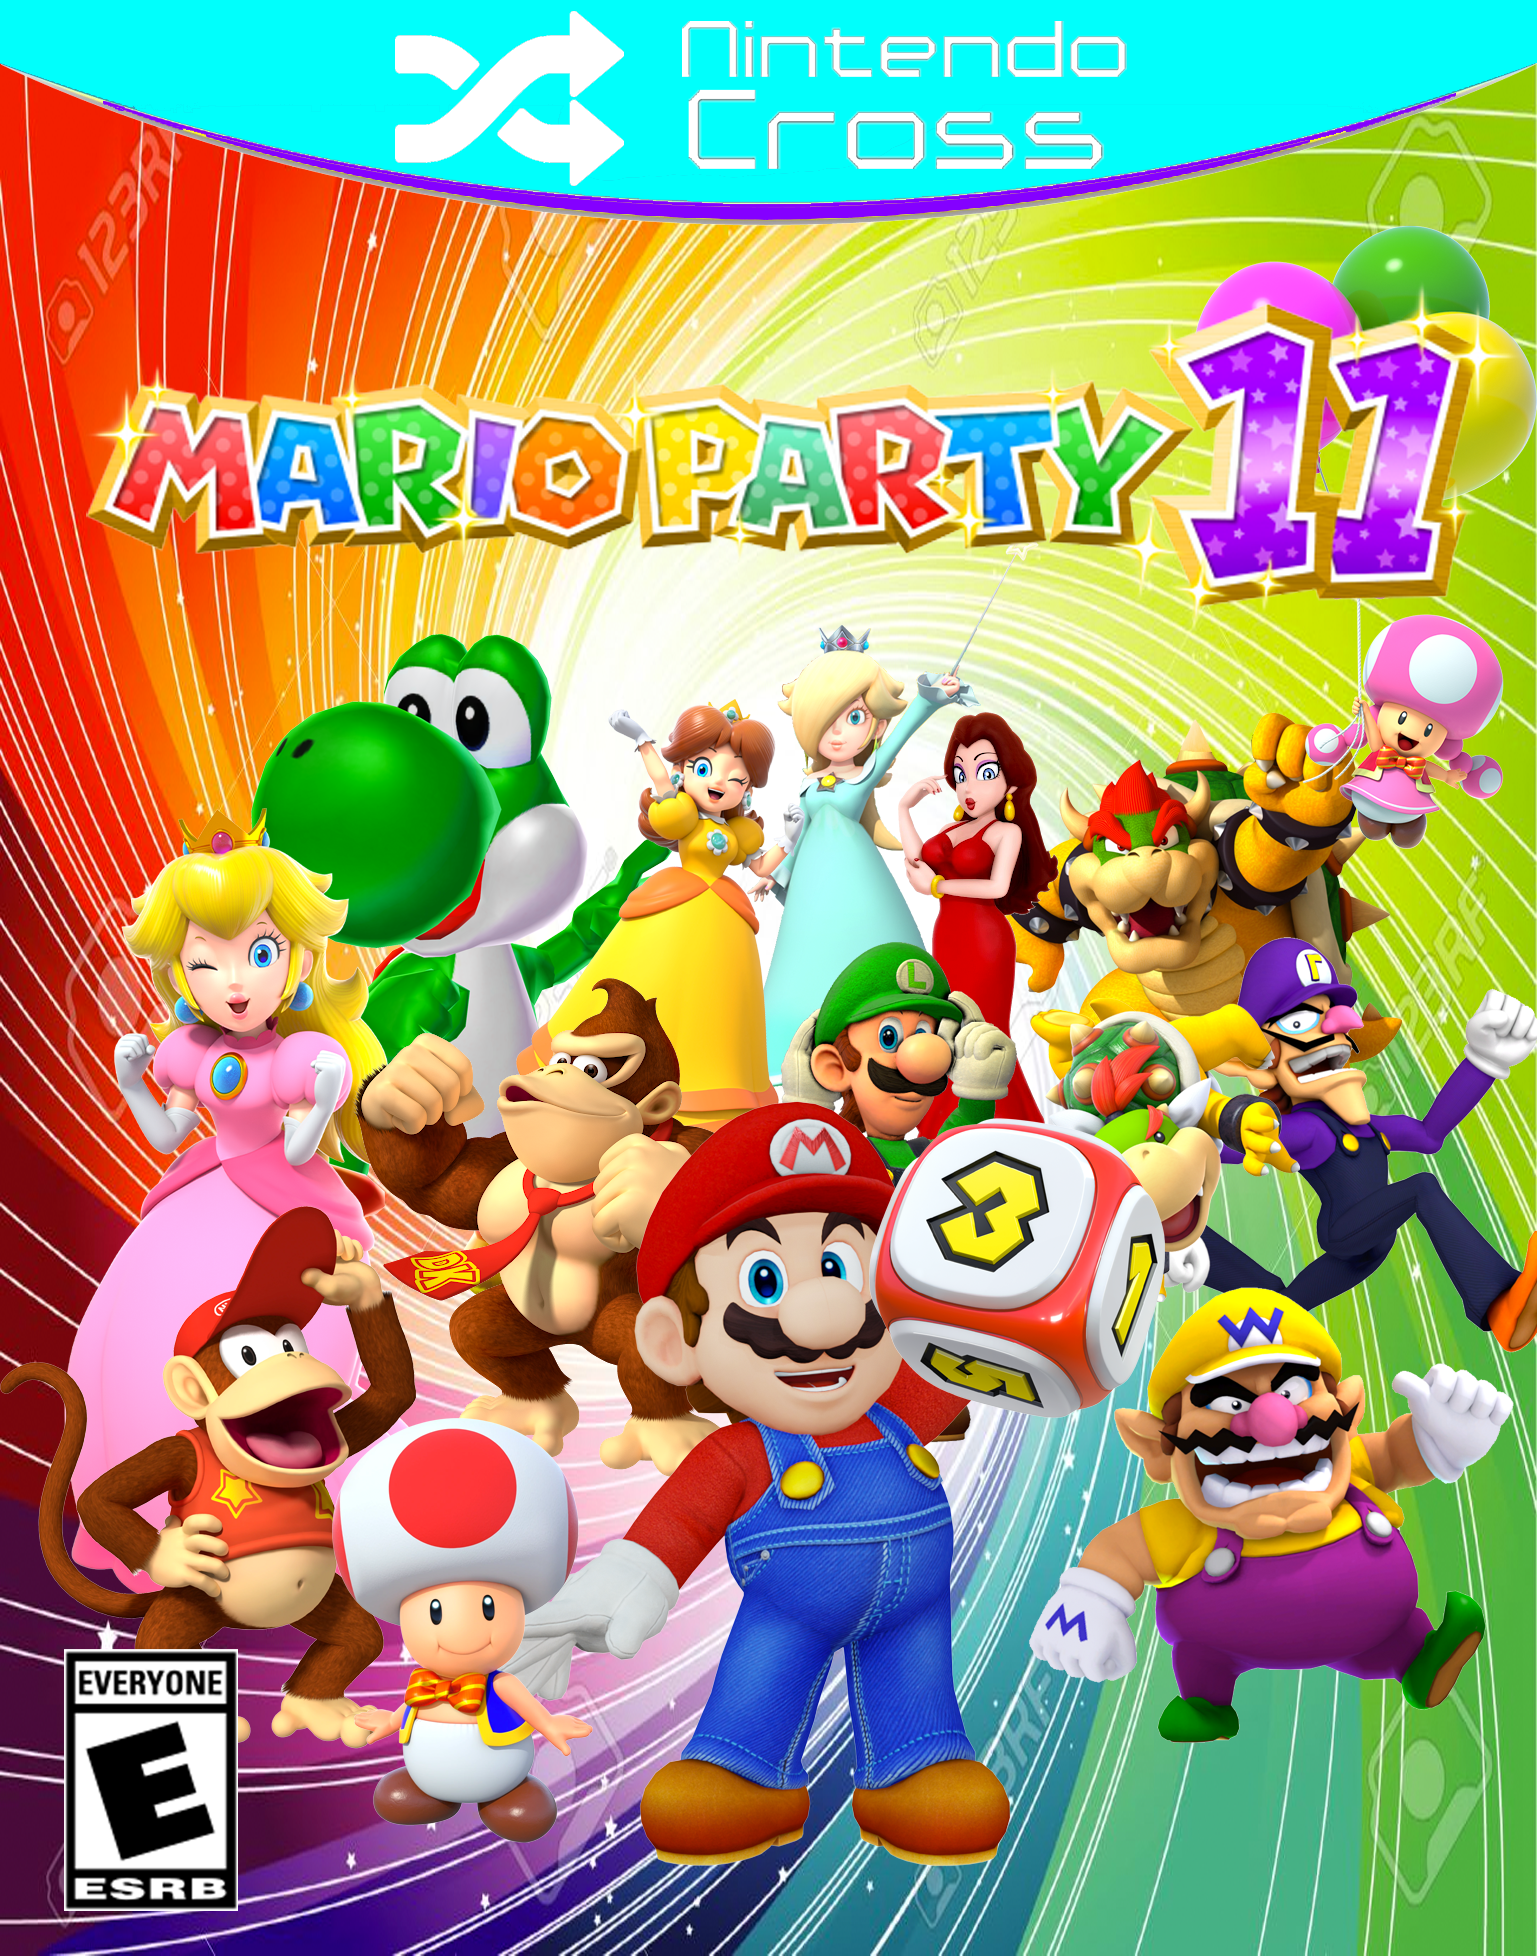 Super Mario Party - Meus Jogos